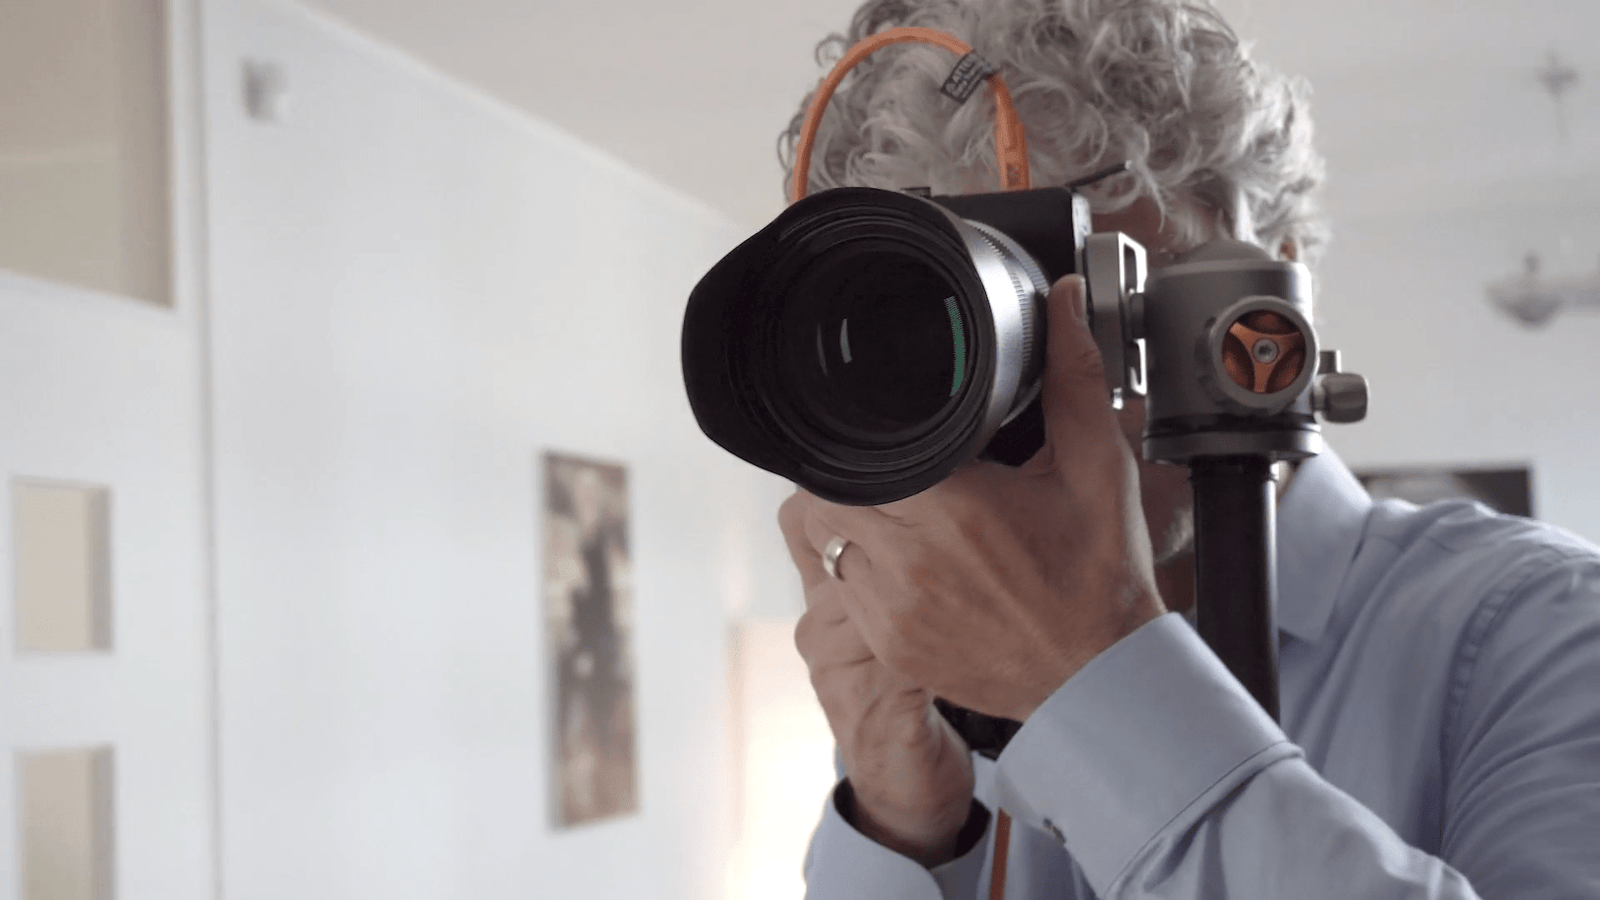 Profi-Fotograf Mario Dirks testet Lumen Flex – so funktionieren Porträtfotos mit unseren LED-Dauerlichtern